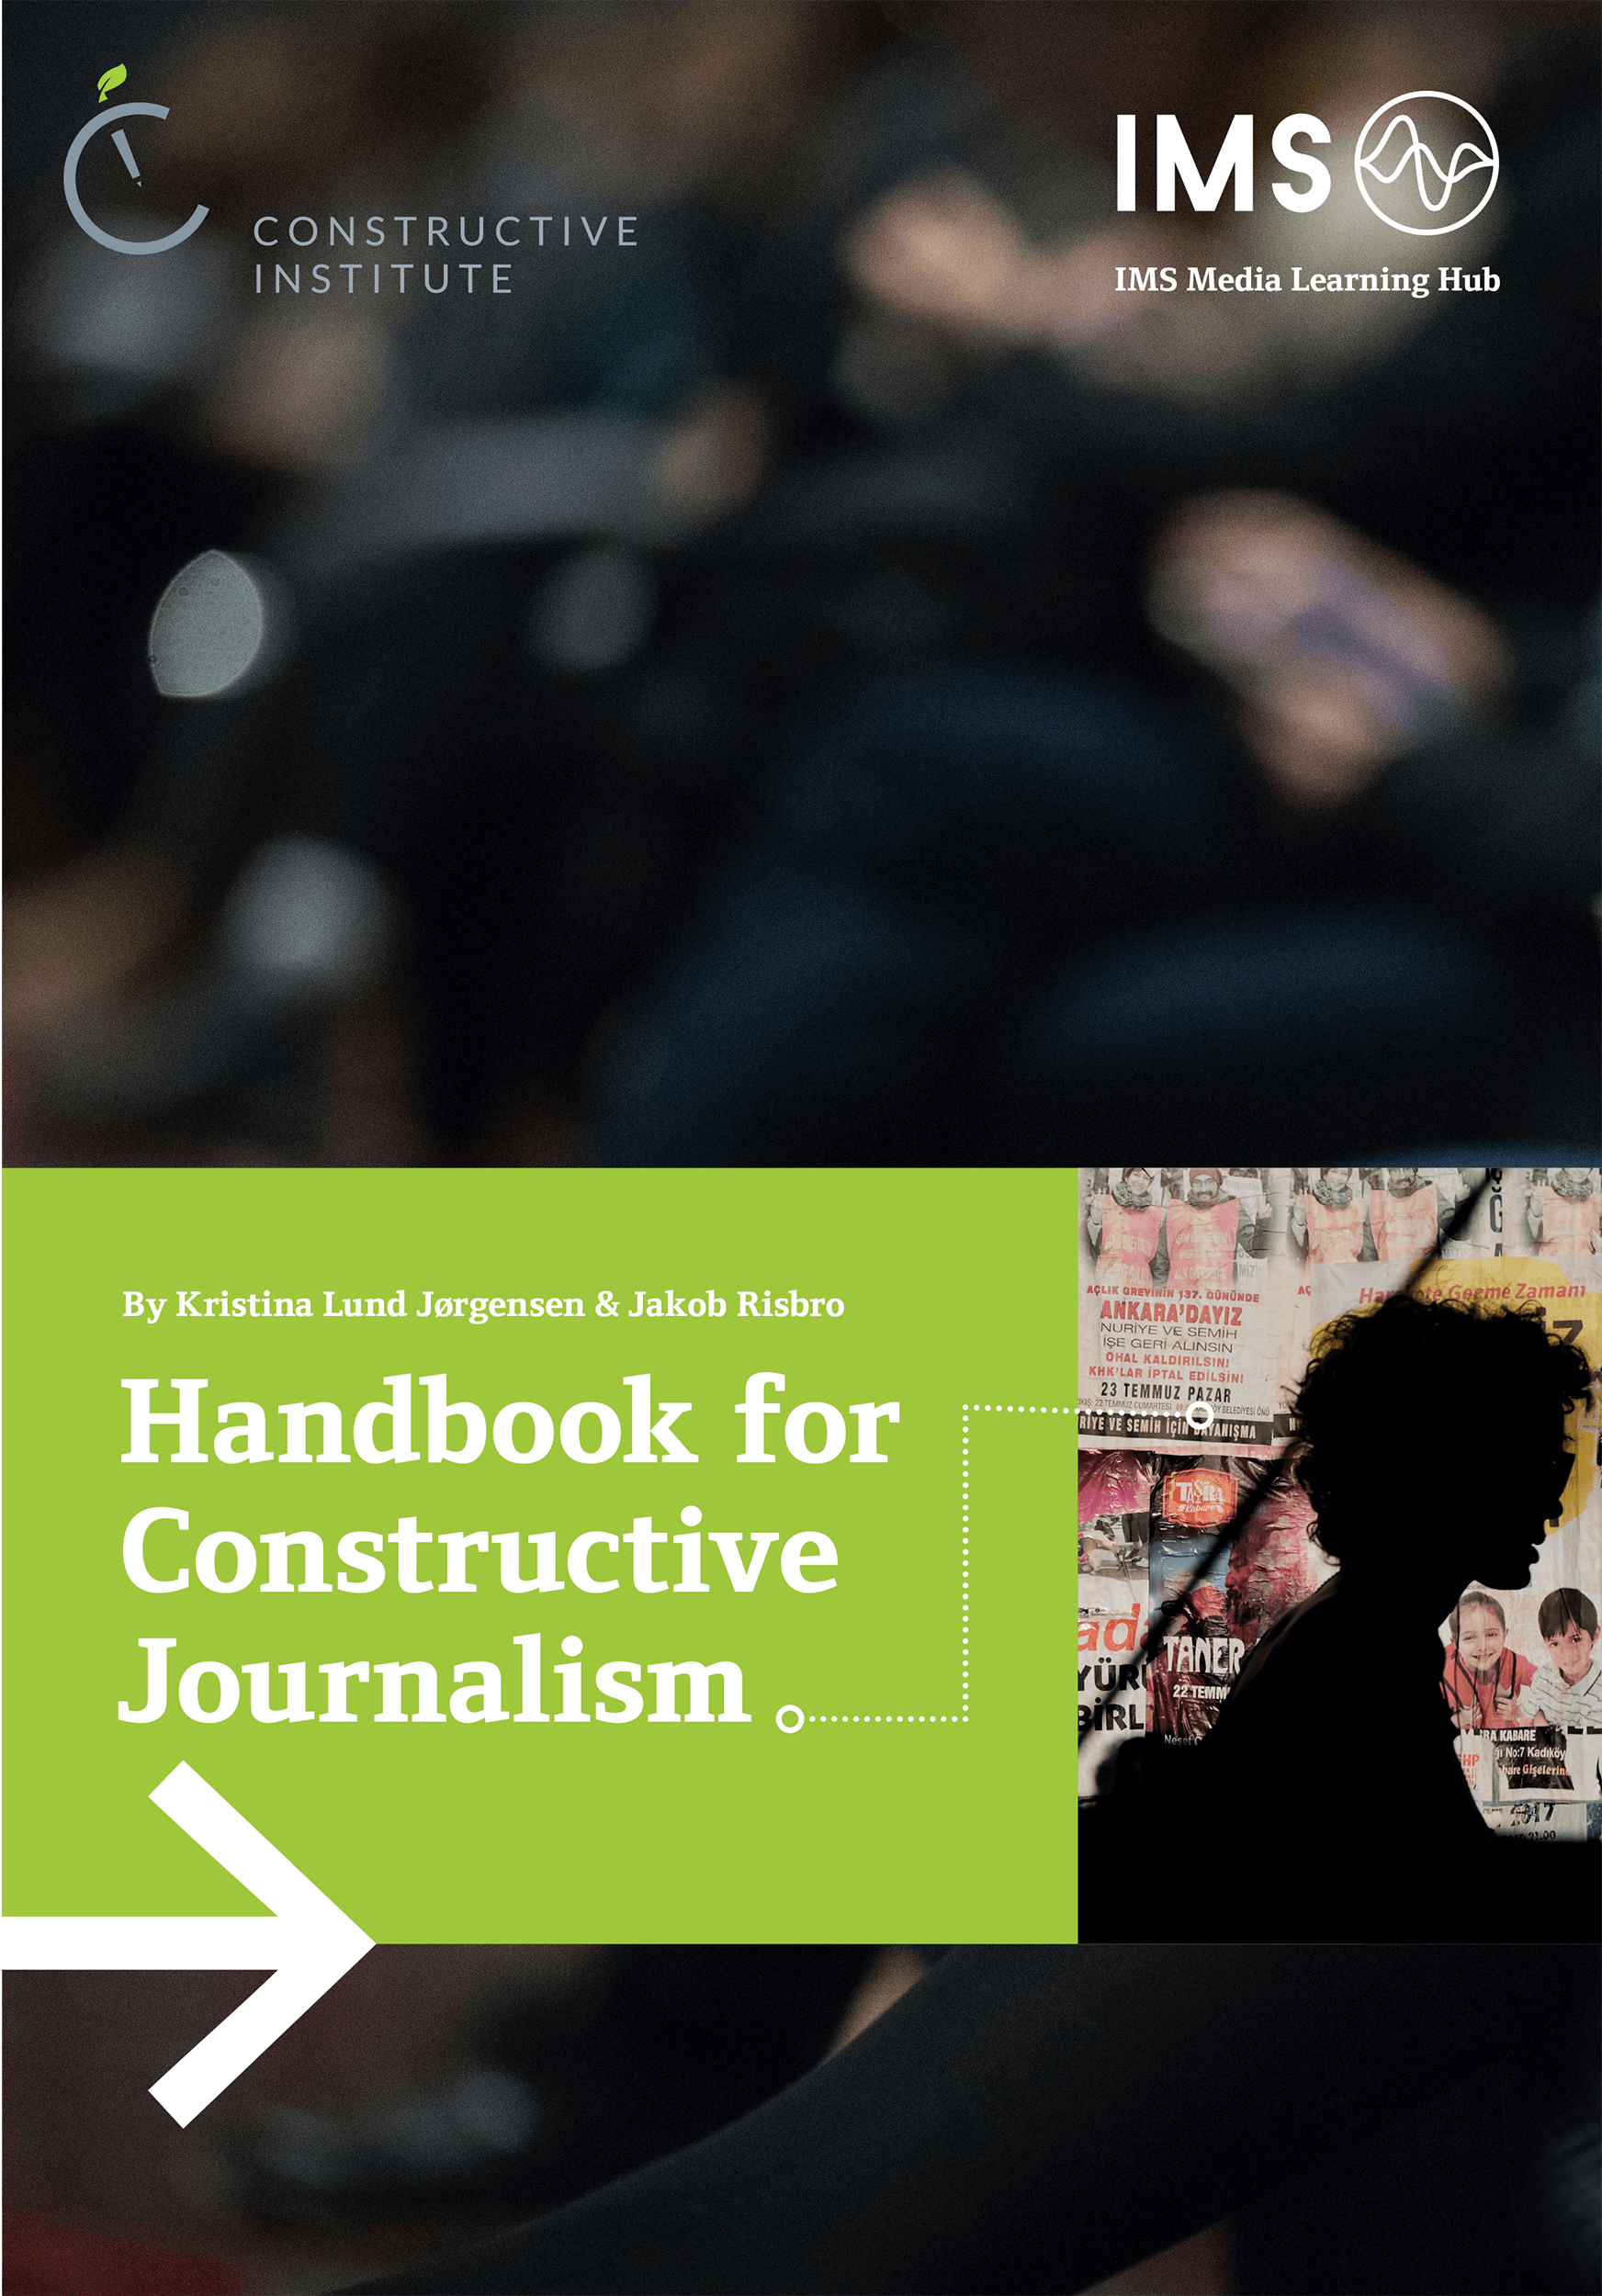 A Handbook on Constructive Journalism